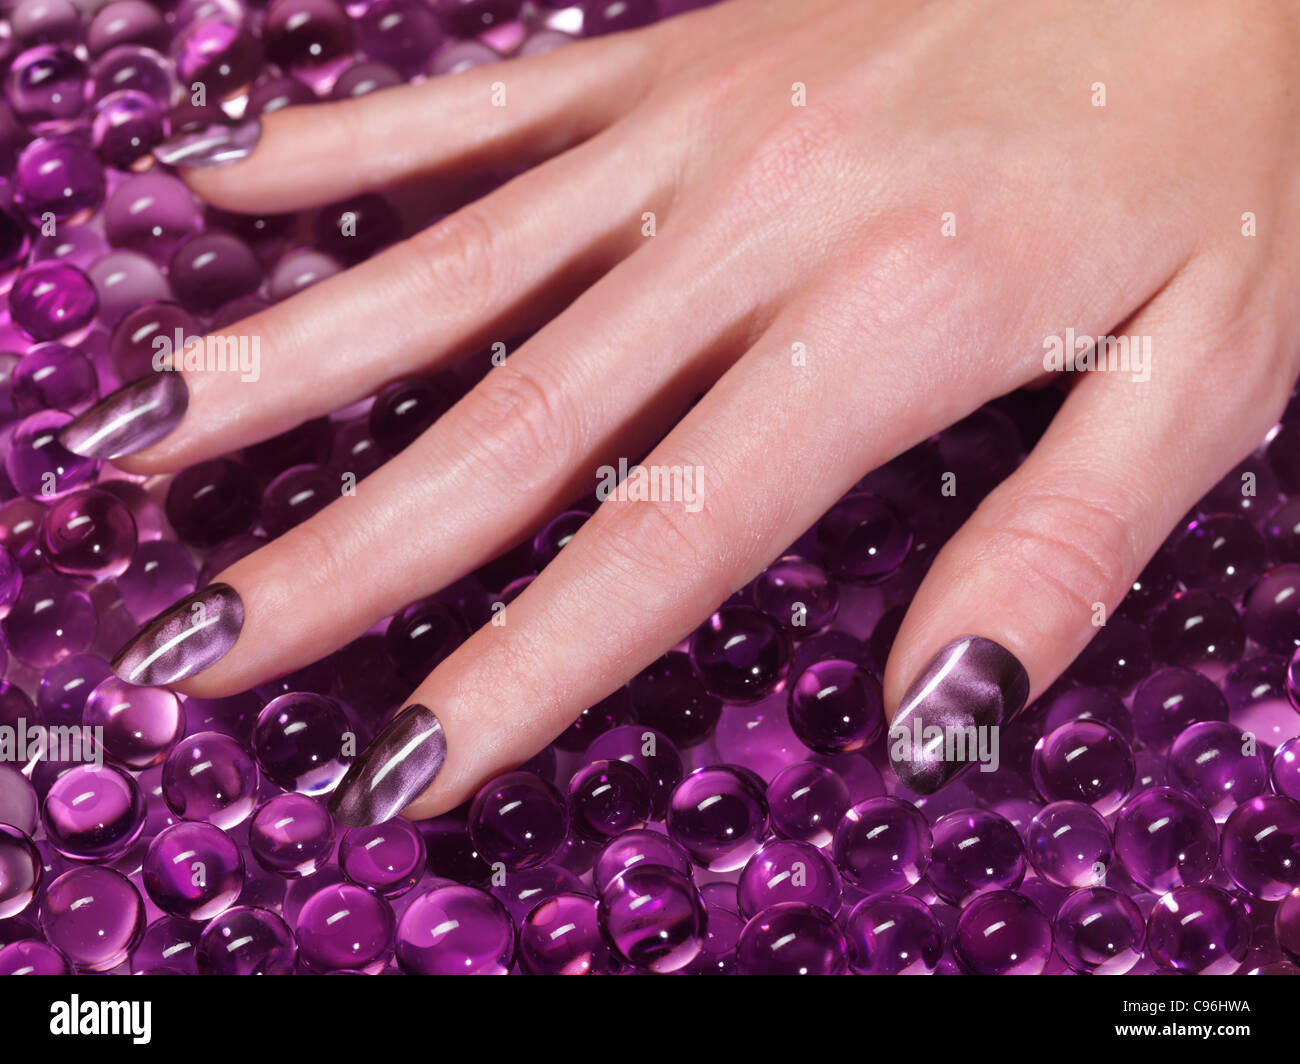 Lizenz erhältlich unter MaximImages.com Großaufnahme der Frauenhand mit Acrylnägeln und violettem nagellack Stockfoto